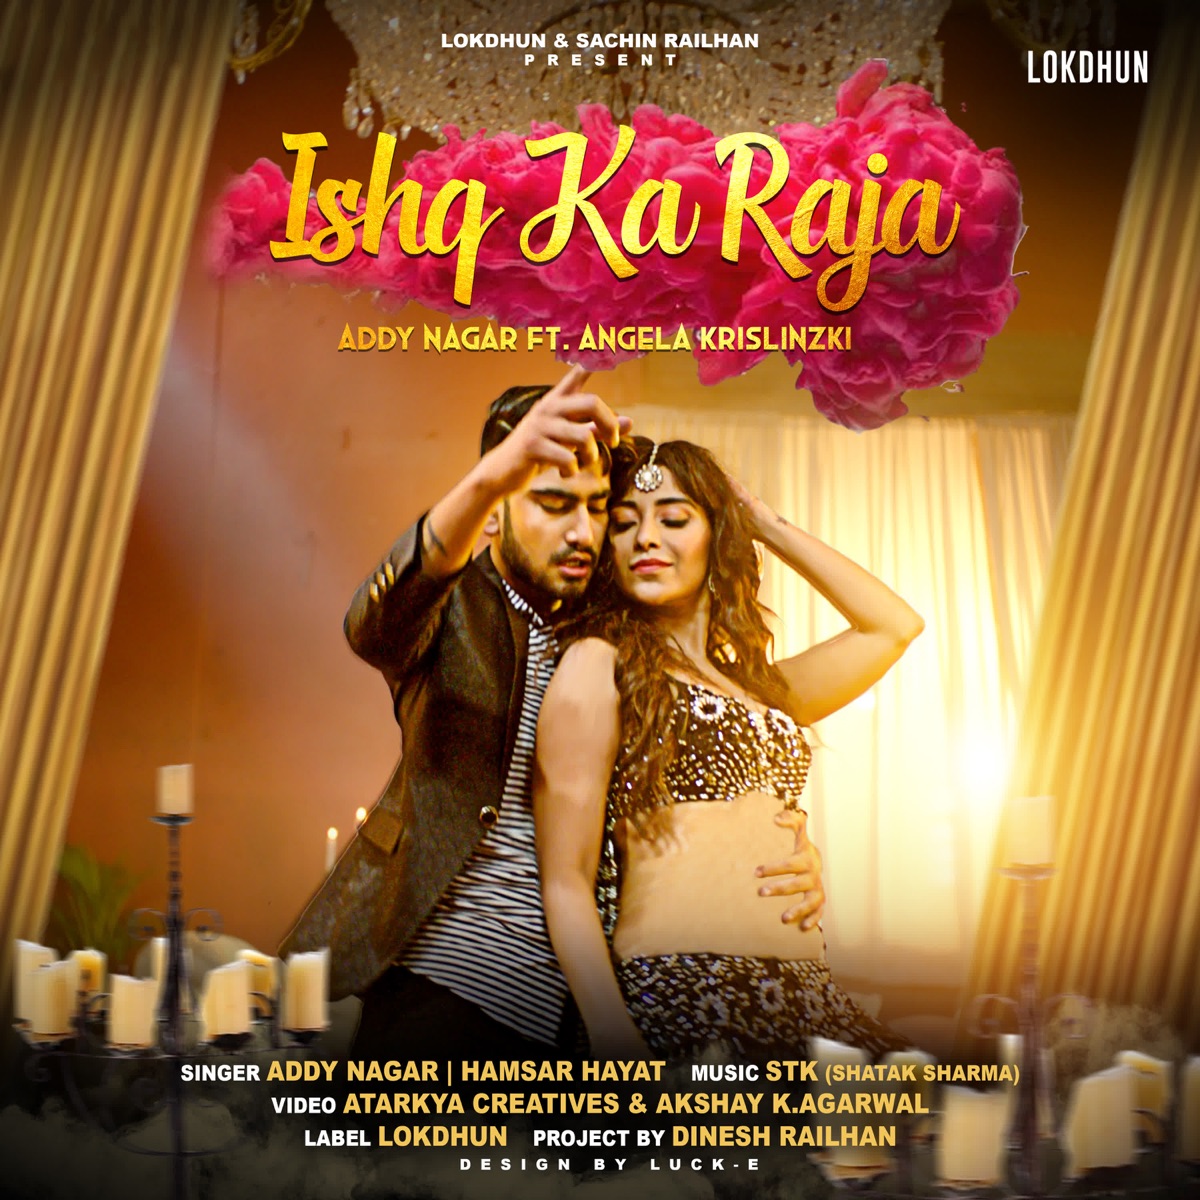 ‎Ishq Ka Raja (feat. Angela Krislinzki) - Single by Addy Nagar & Hamsar  Hayat on iTunes